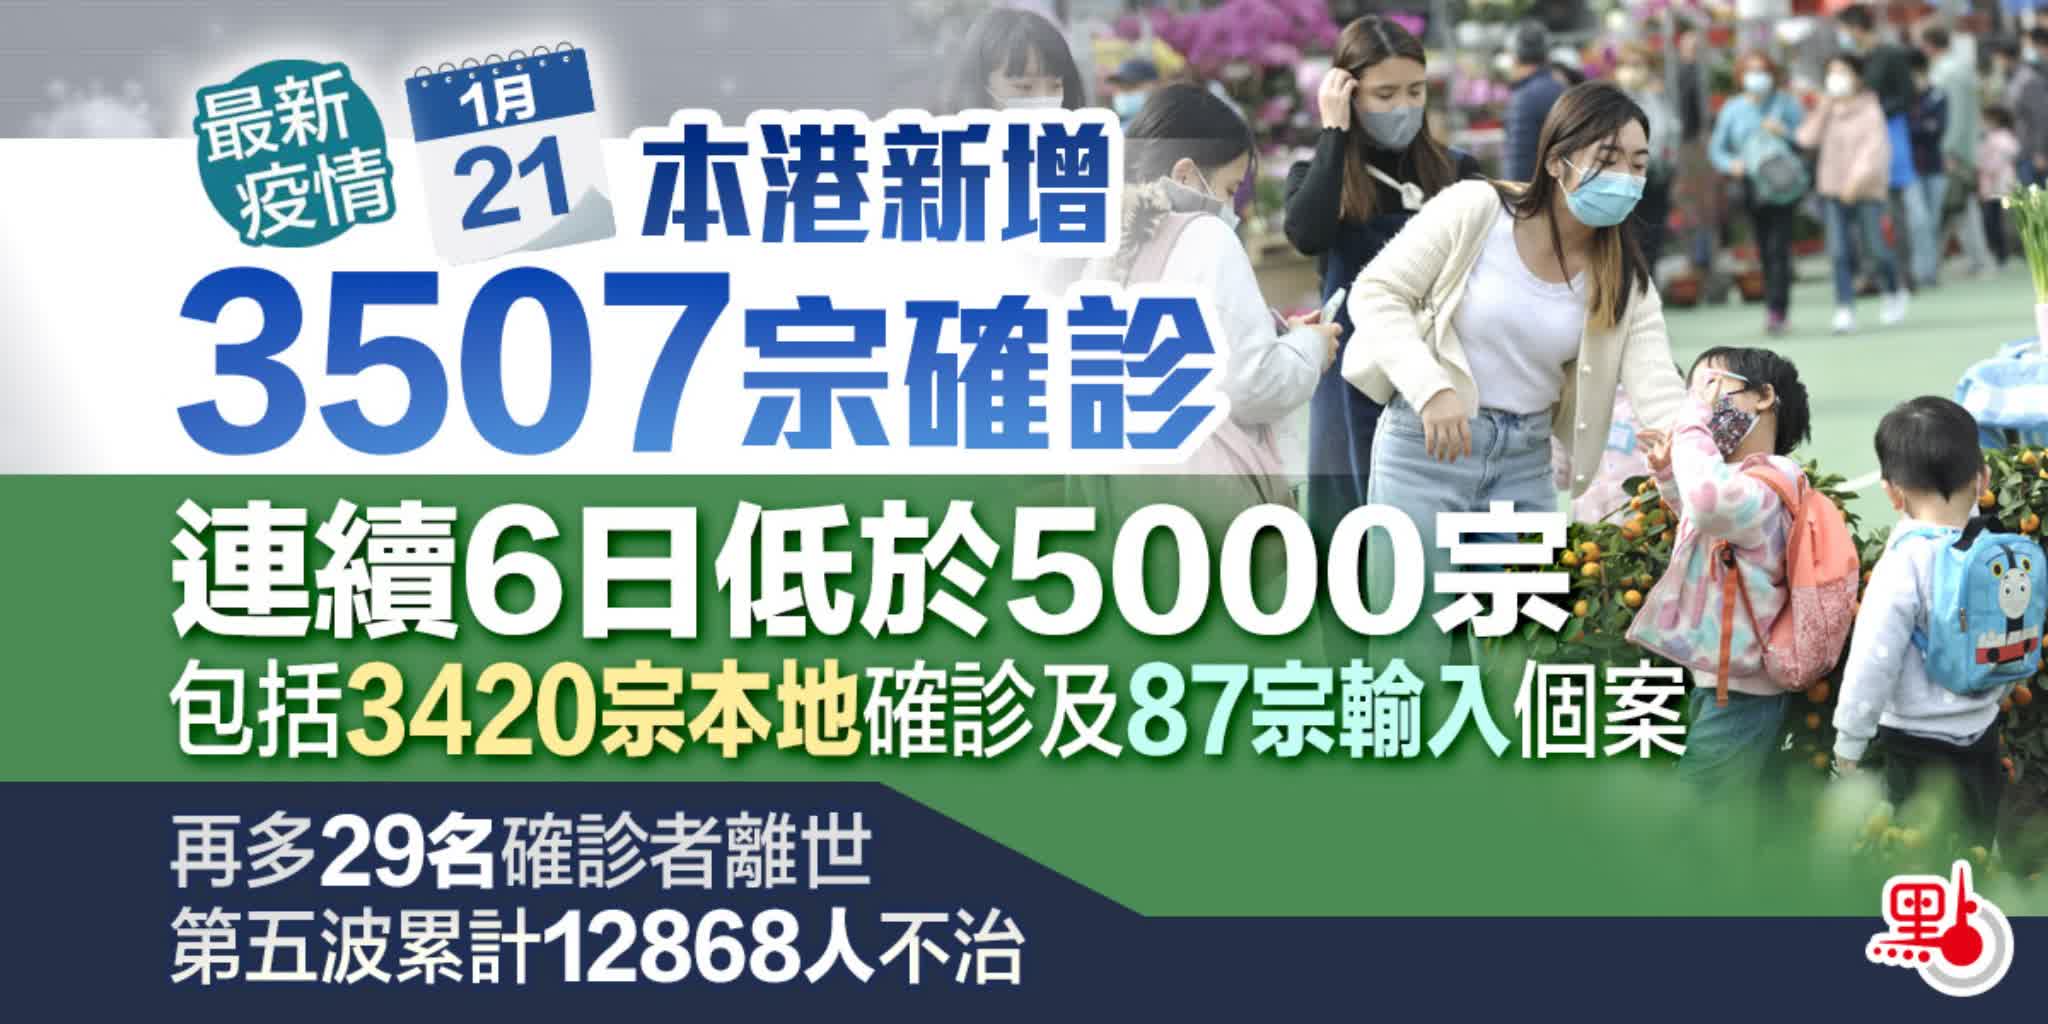 本港新增3507宗確診　連續6日低於5000宗